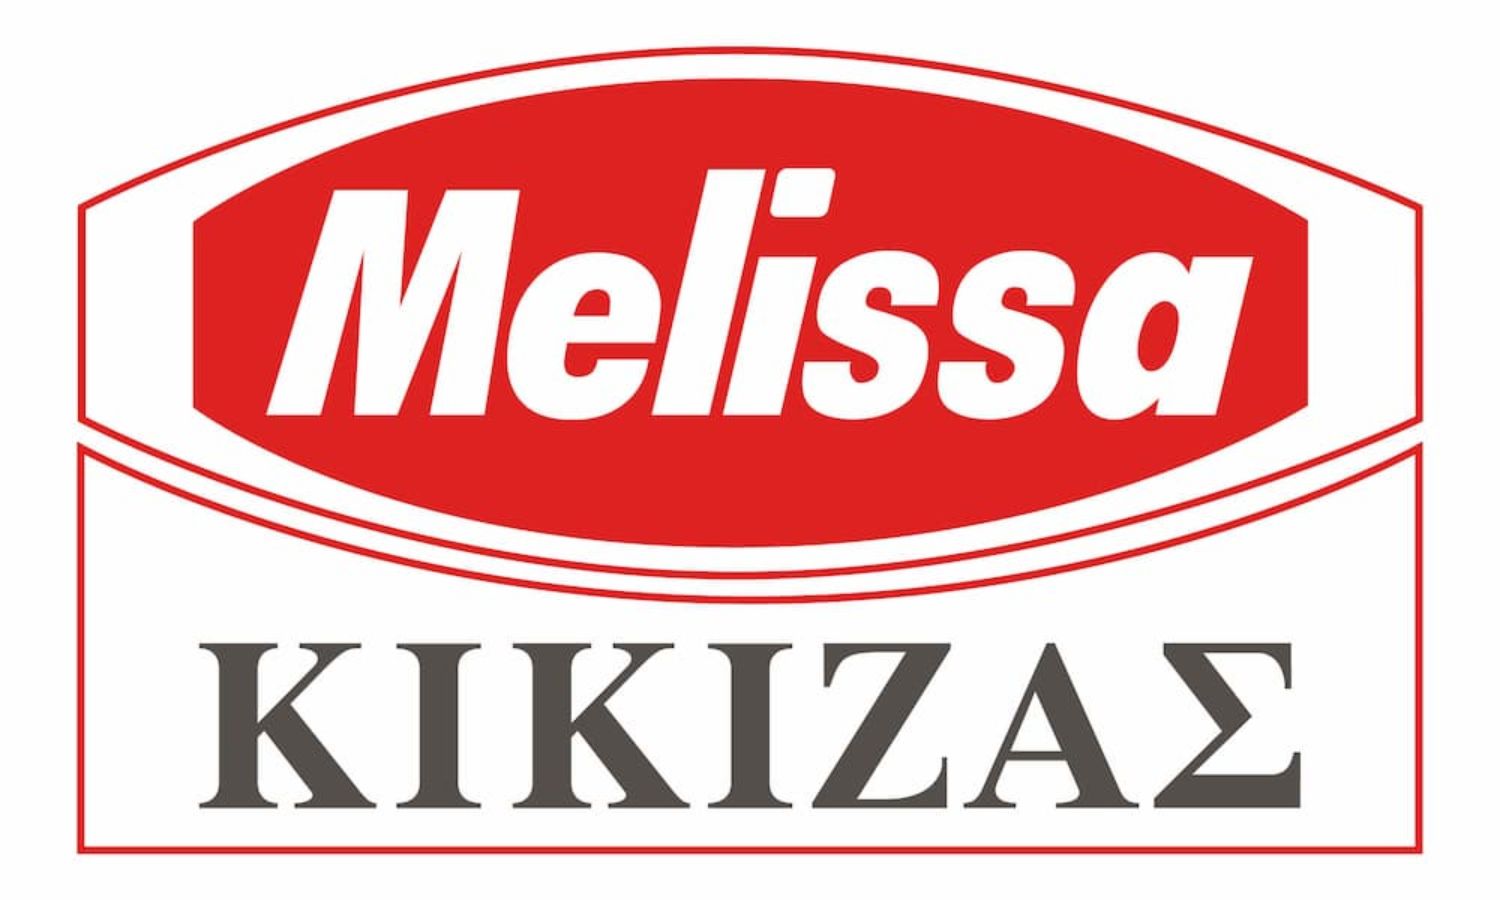 Melissa-Kikizas